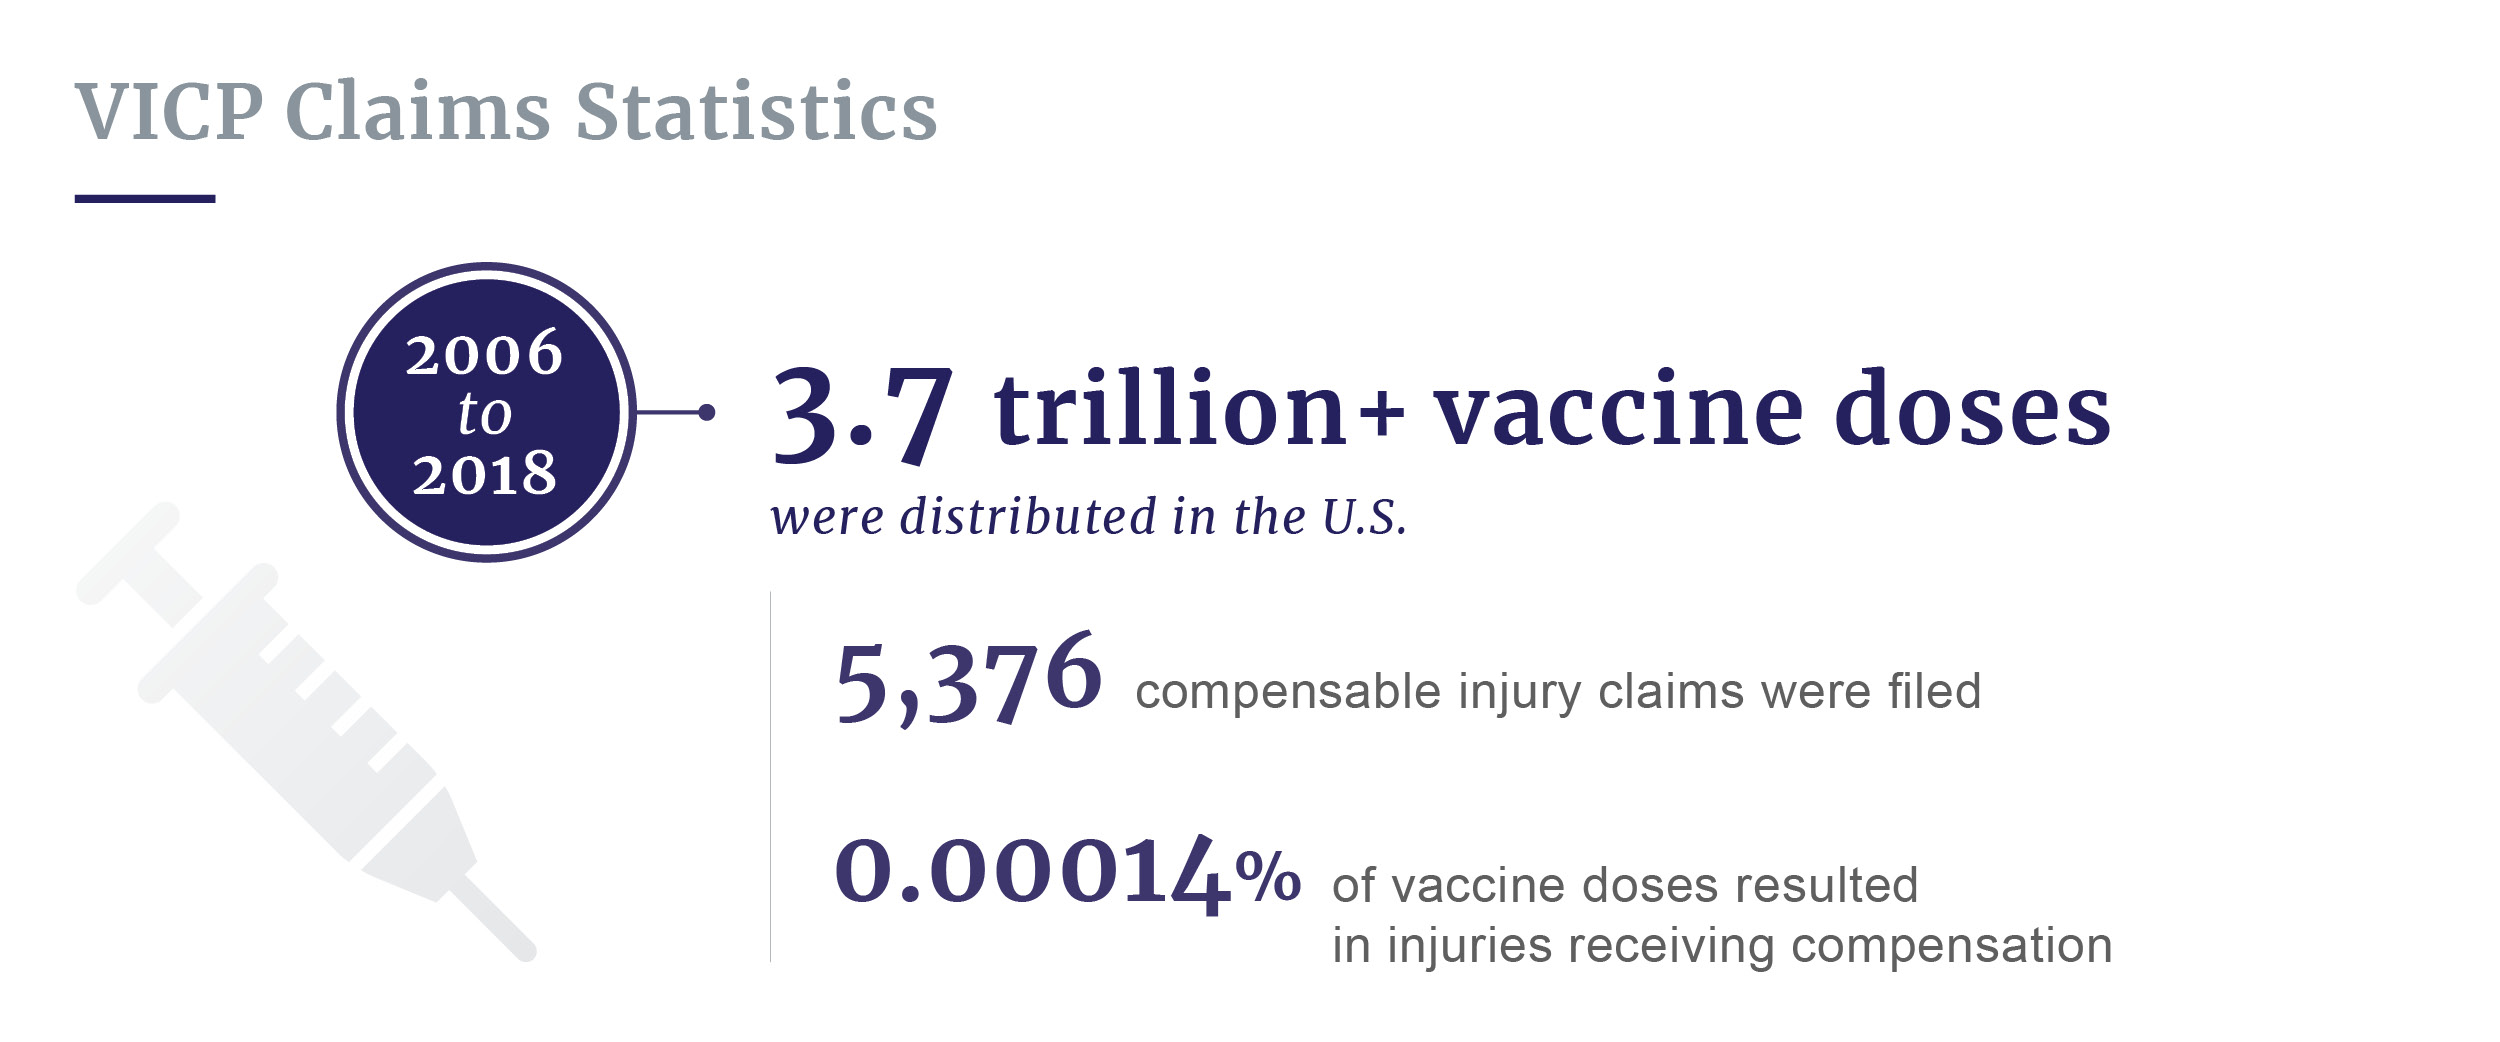 Vaccine injury claims statistics